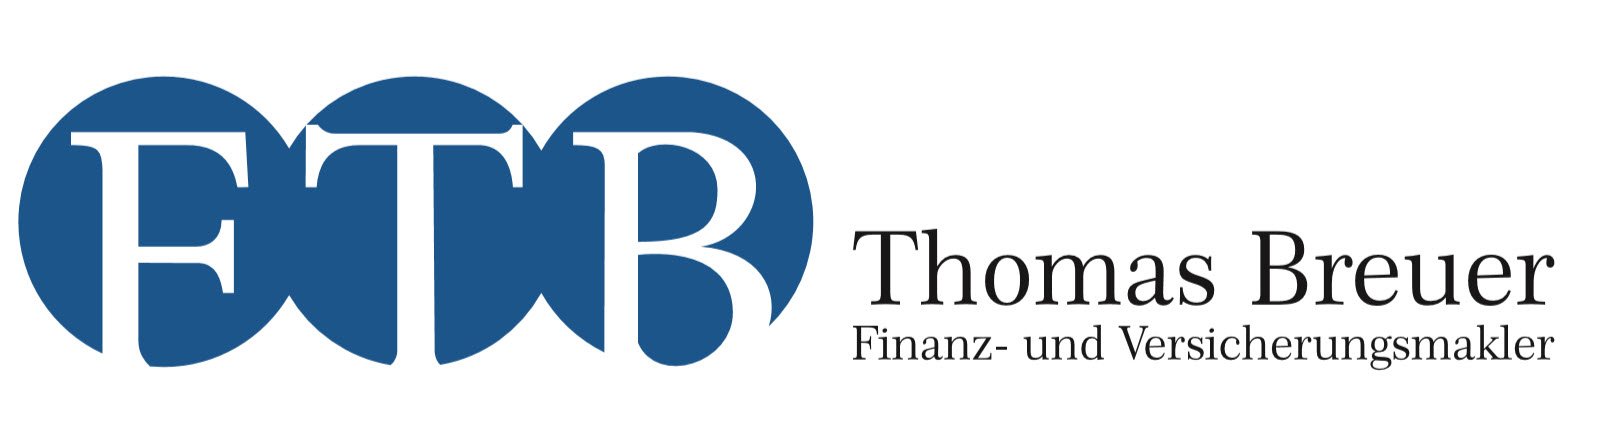 FTB - Thomas Breuer Finanz- und Versicherungsmakler